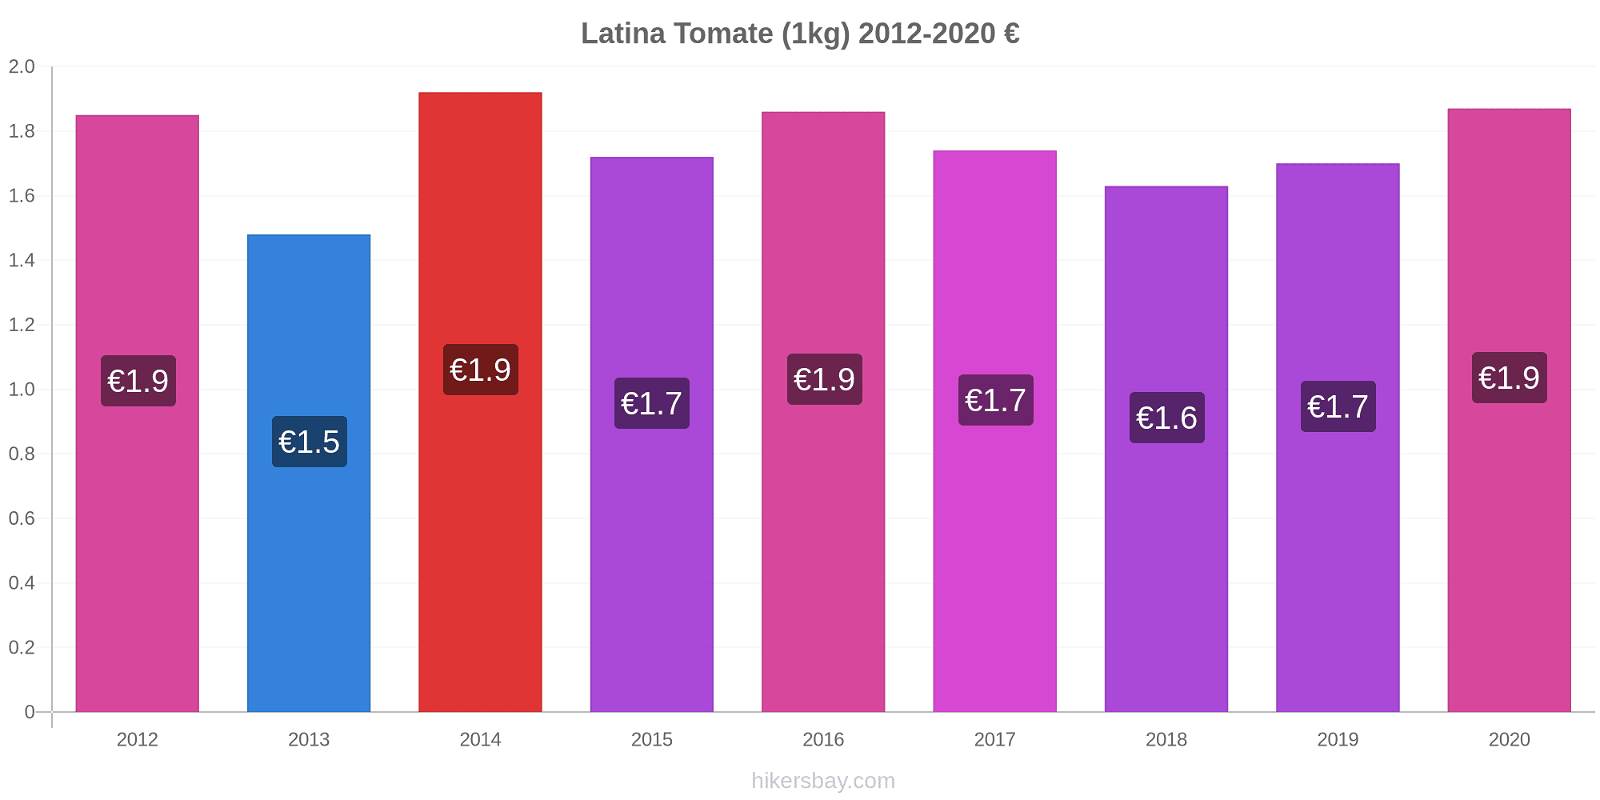 Latina cambios de precios Tomate (1kg) hikersbay.com